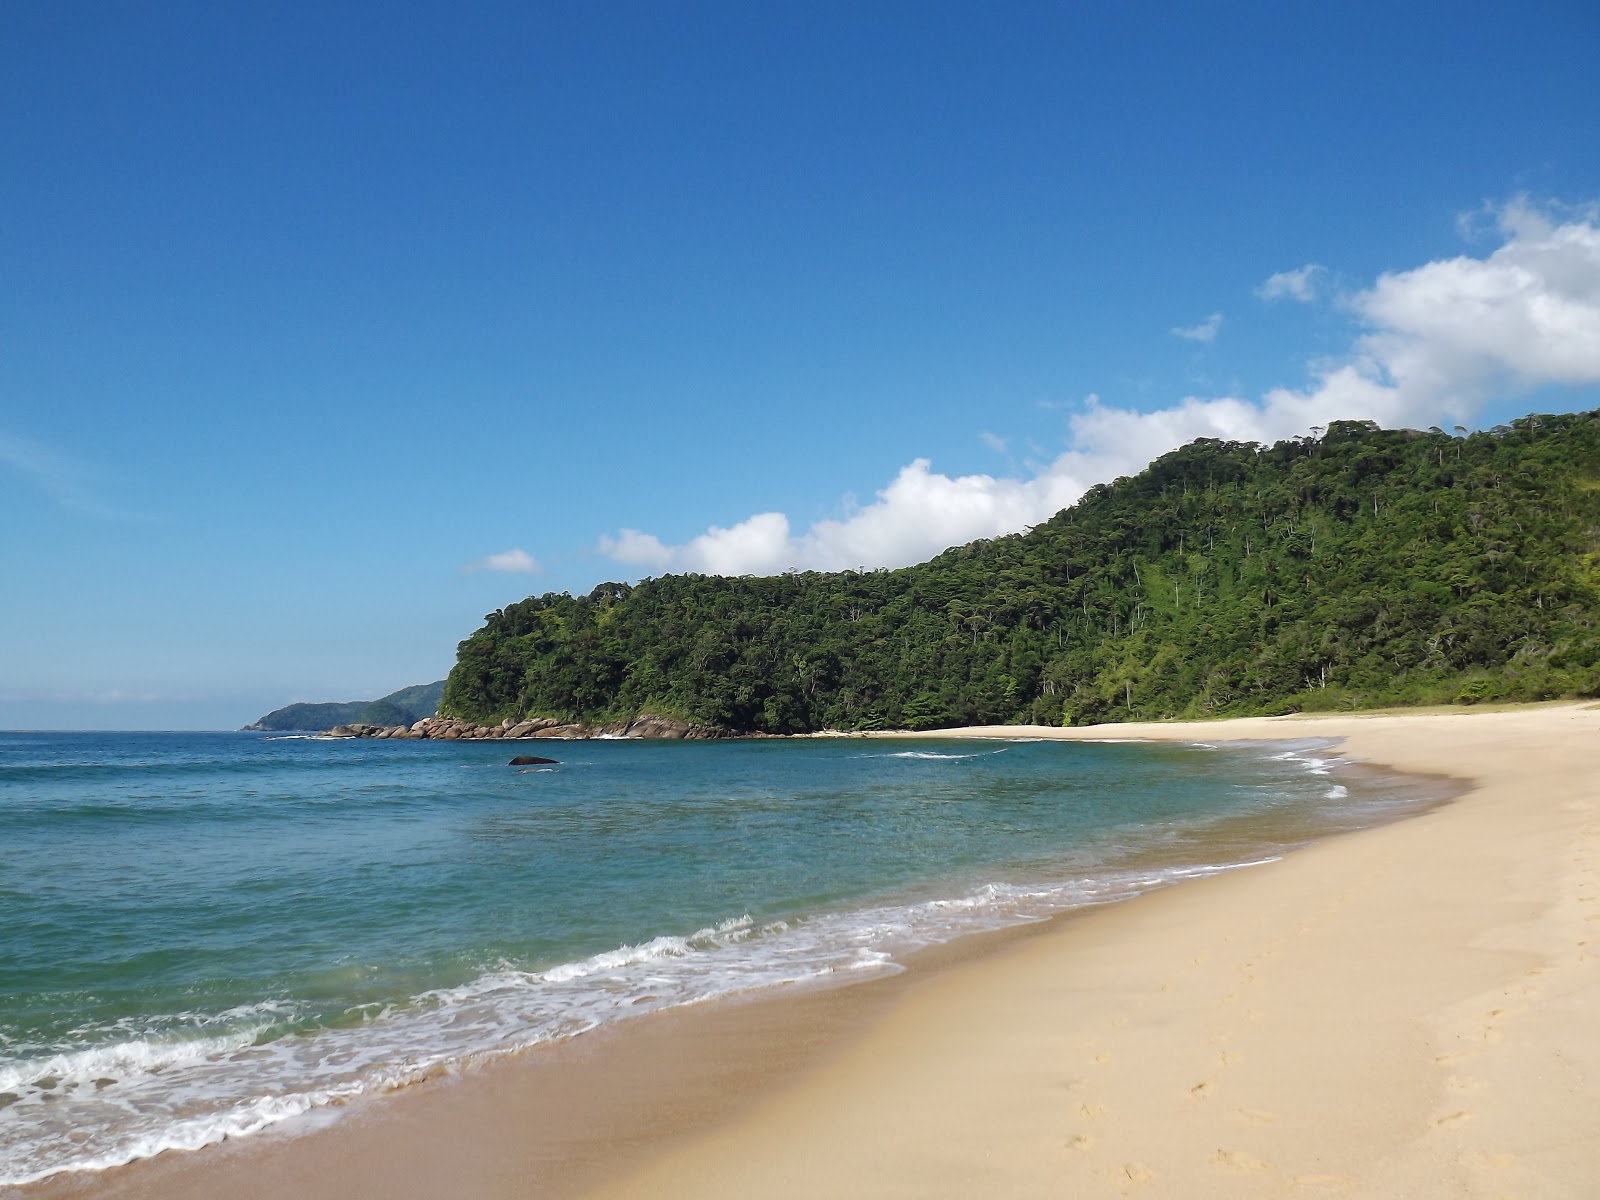 Fotografie cu Praia da Meia Lua - locul popular printre cunoscătorii de relaxare